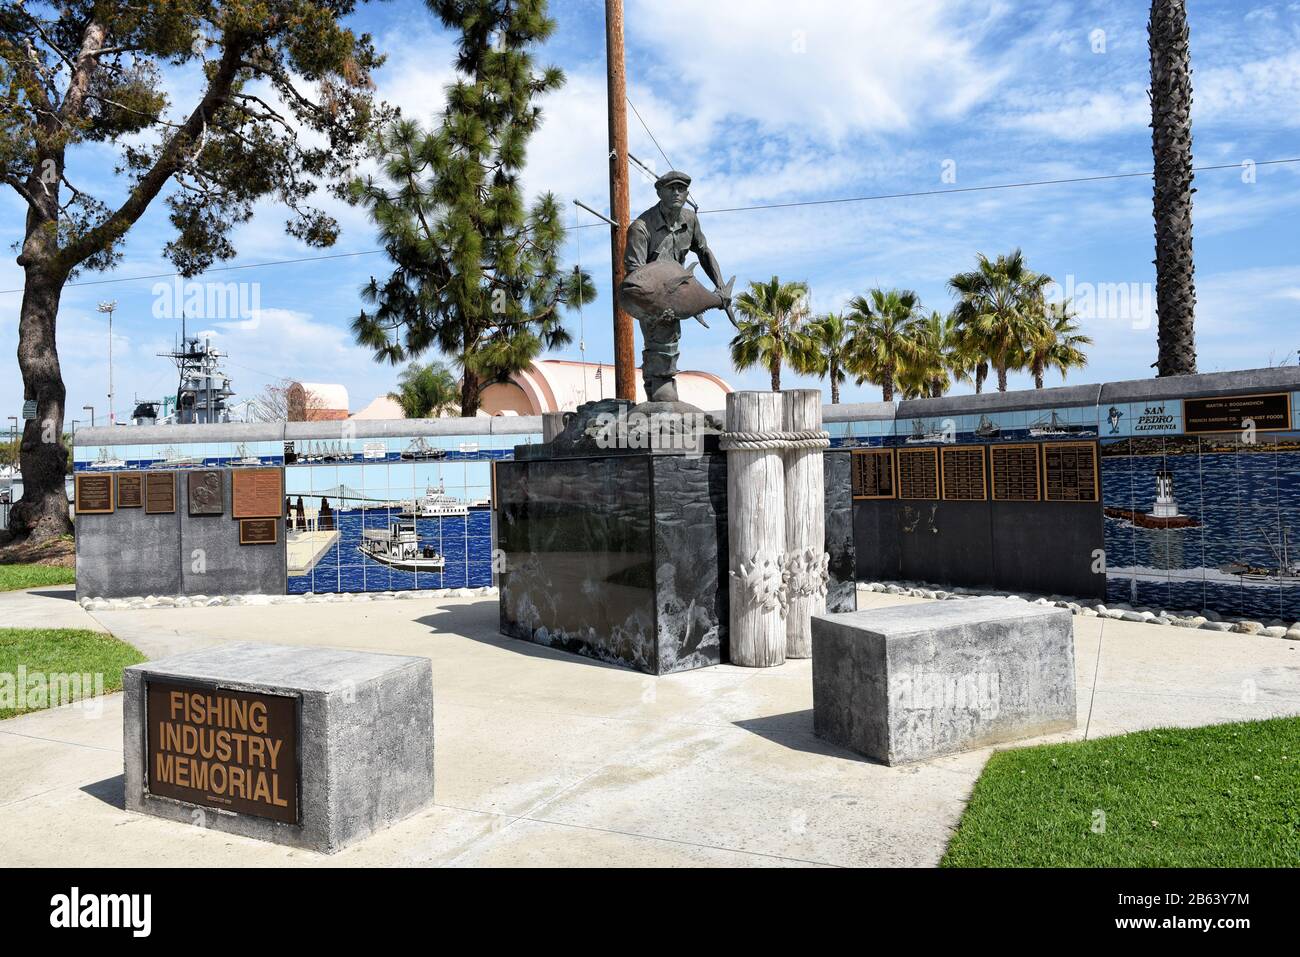 San PEDRO, CALIFORNIA - 06 MAR 2020: Monumento a la Industria Pesquera en el Parque John S. Gibson rinde homenaje a los hombres y mujeres valientes que desafiaron el Mar. Foto de stock